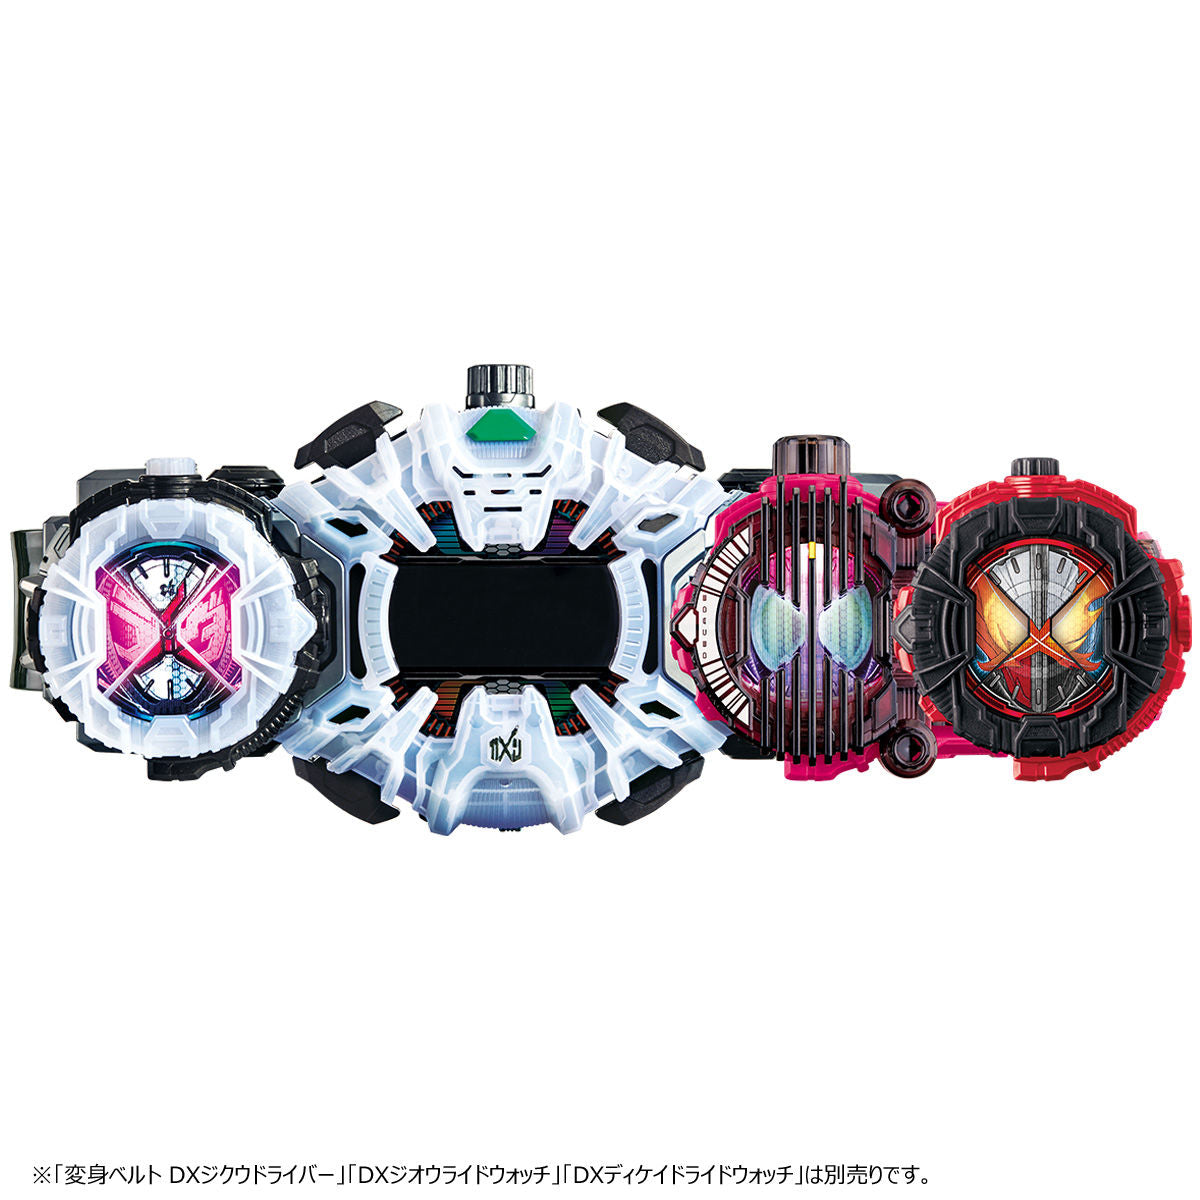 DX Kamen Rider Saber & Decade Complete Form 21 Ride Watch Set